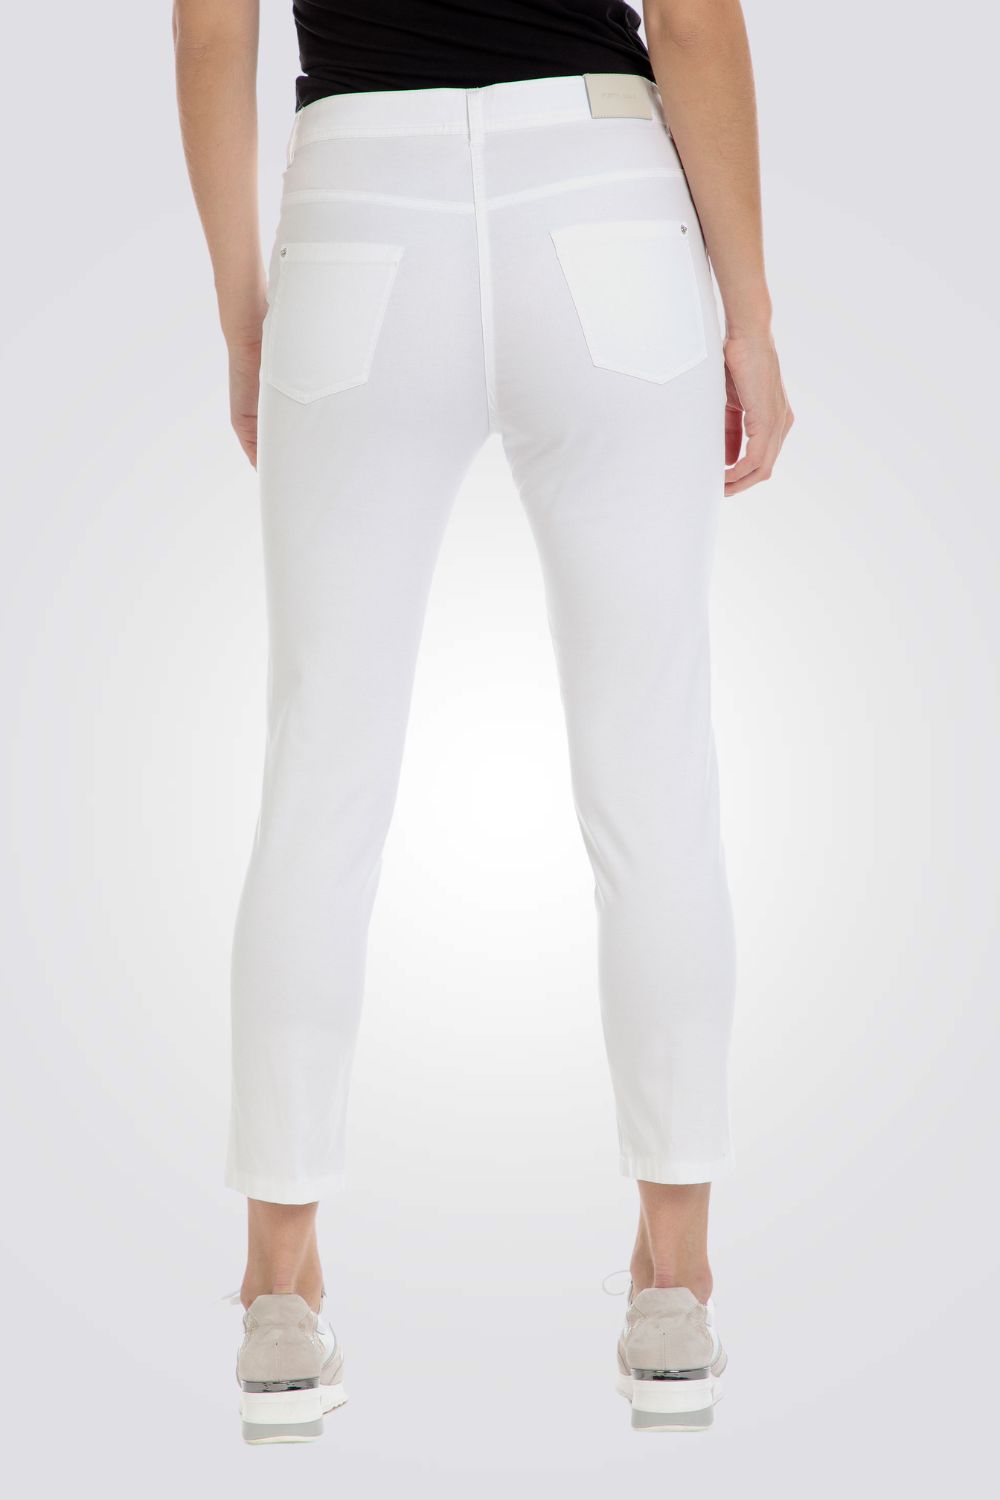 ג'ינס בצבע לבן